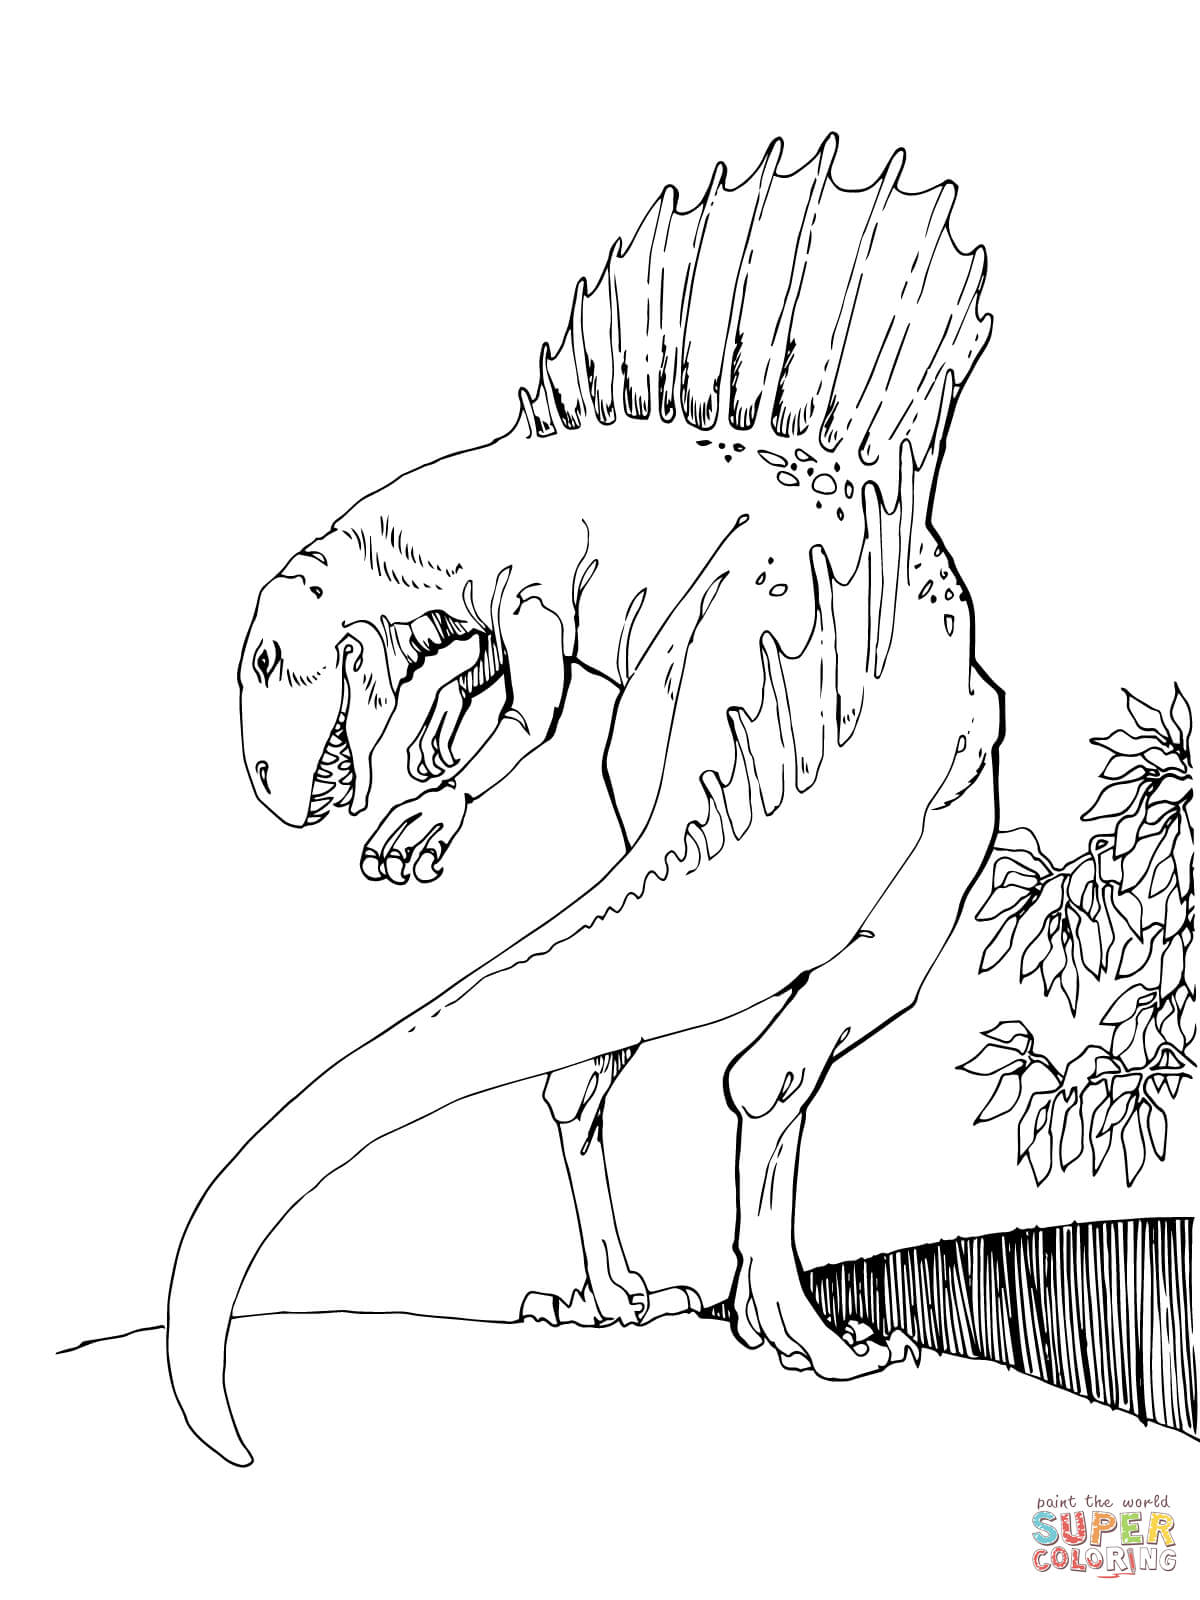 Spinosaurus Theropod Dinosaur coloring page